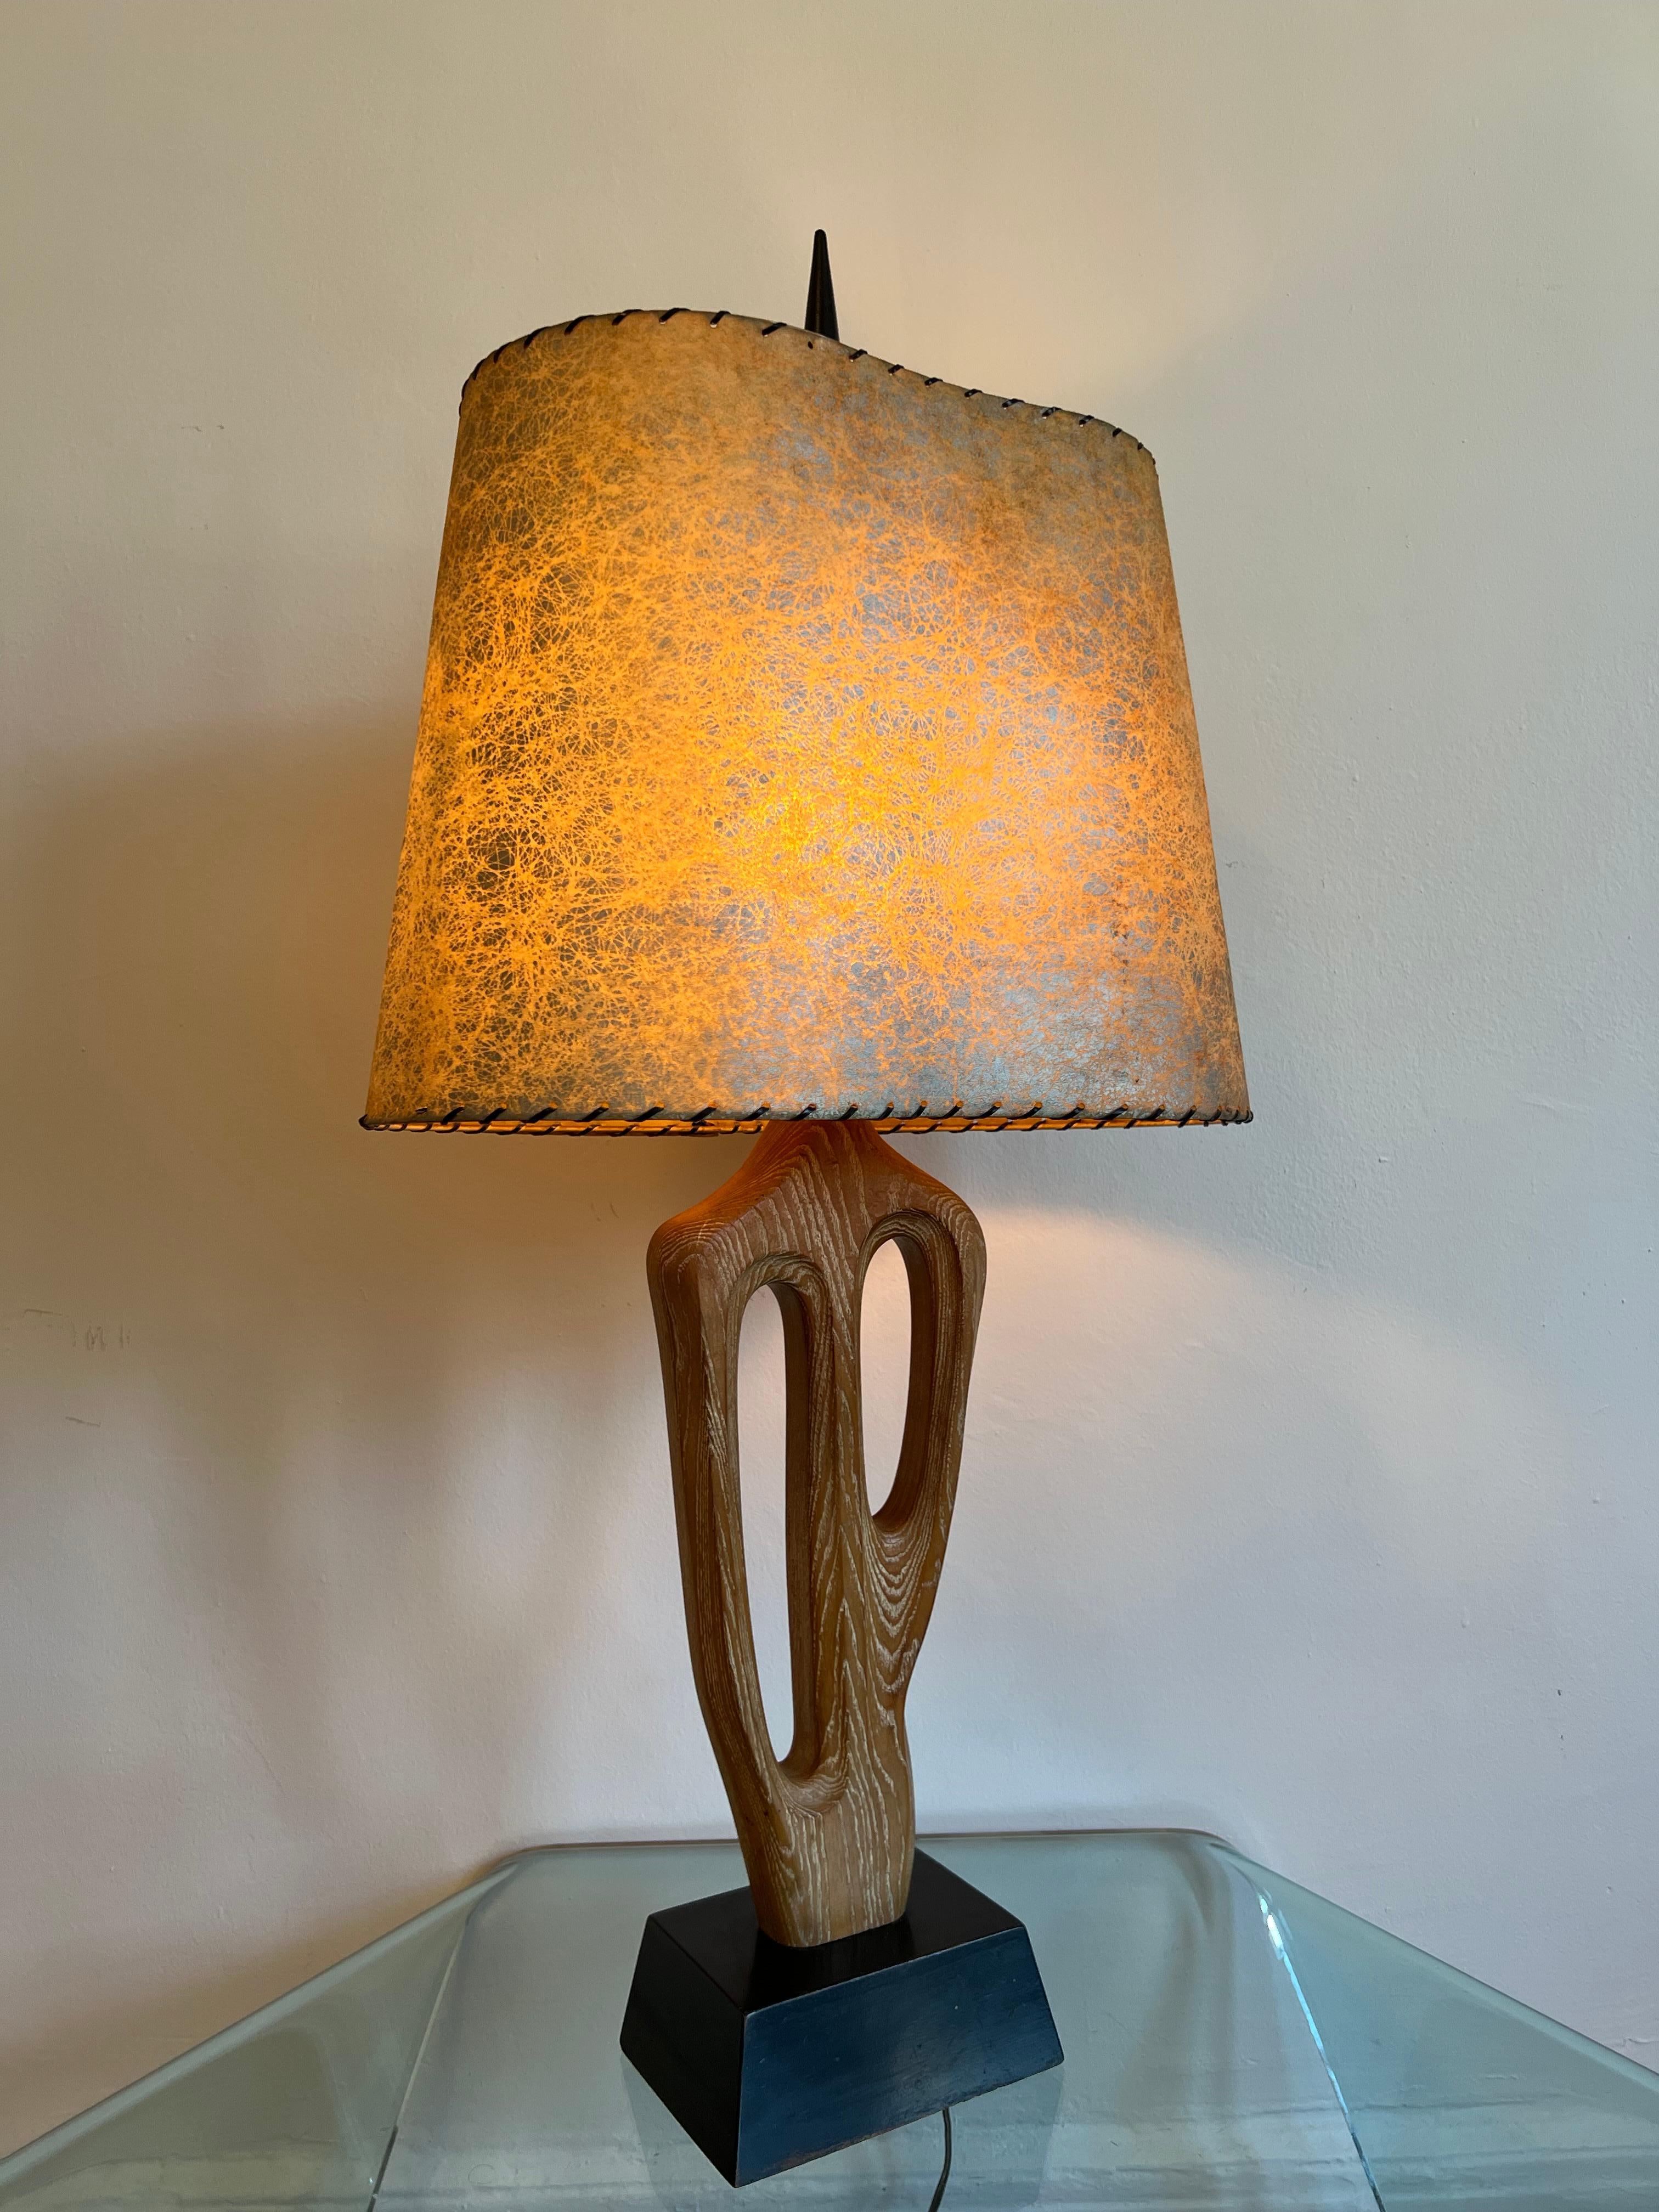 Yasha Heifetz a conçu une lampe pour sa propre entreprise, Heifetz Lighting Co. 

Lampe de table biomorphique en bois de chêne cérusé sur une base en bois peint en noir. 

Sculptée dans une seule pièce de chêne et montée sur une base en bois conique